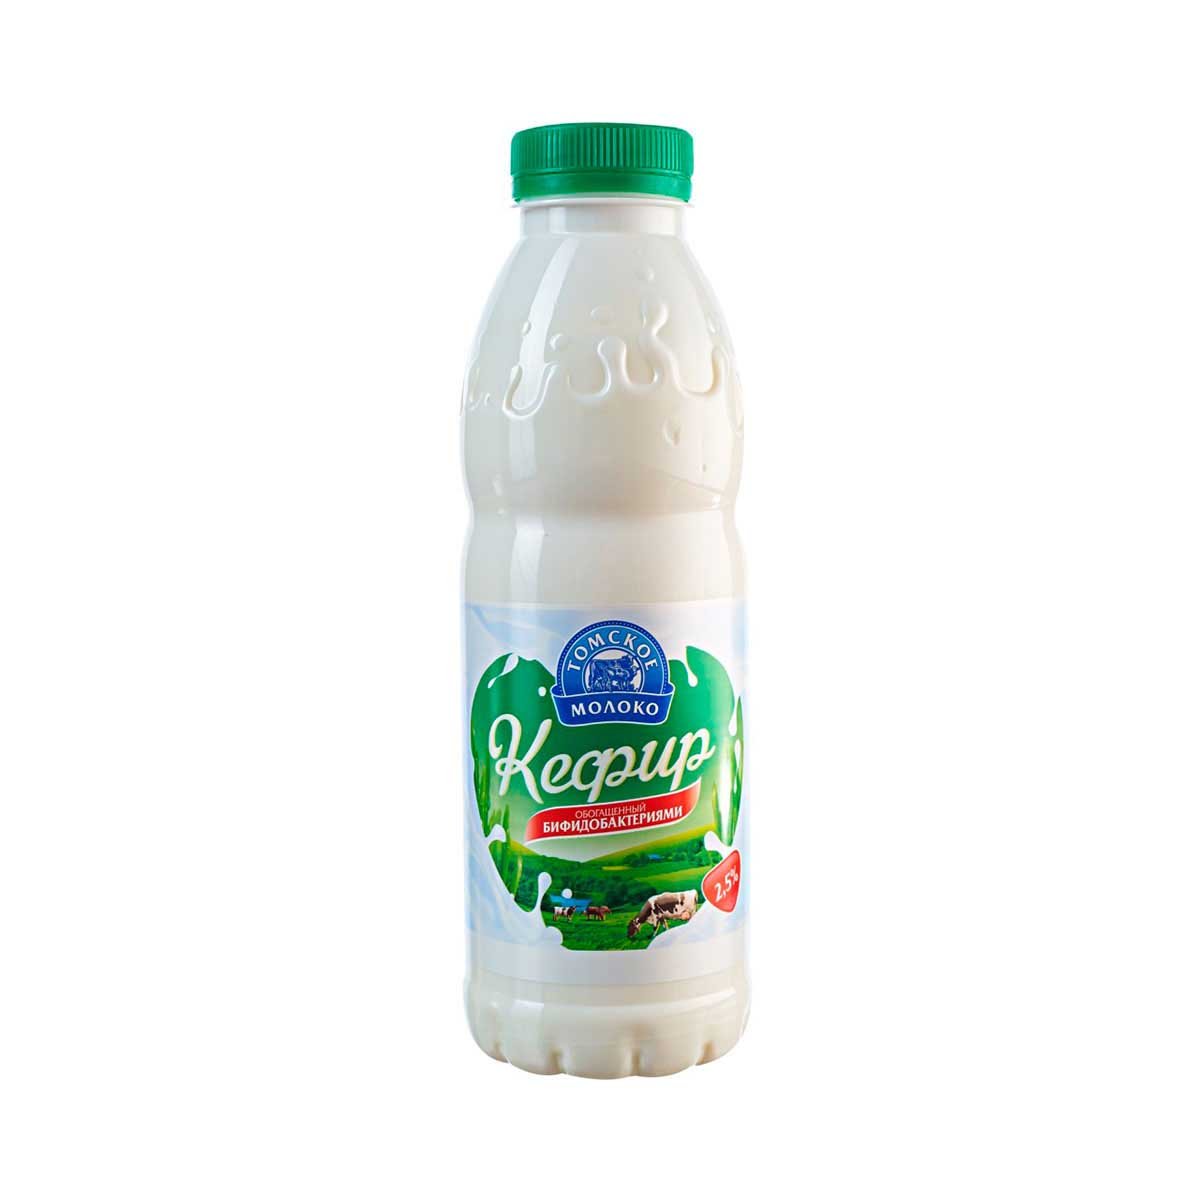 Кефир Томское молоко обогащ бифидобактериями 2.5% пл/б 500г